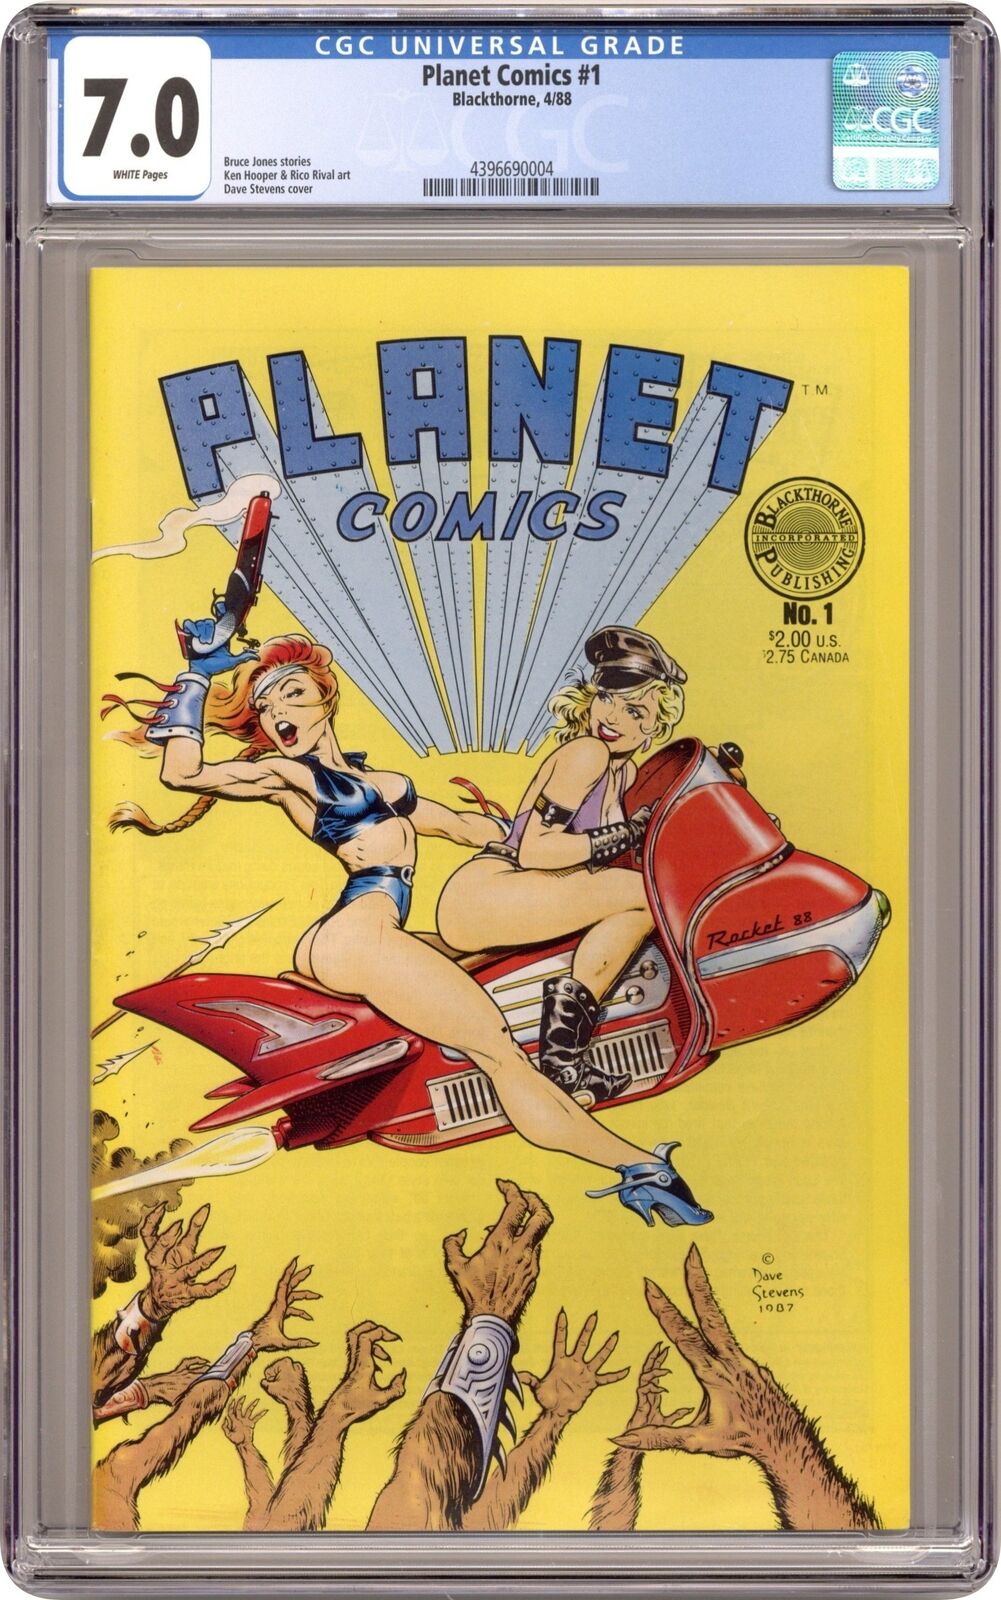 Planet Comics #1 CGC 7.0 1988 4396690004